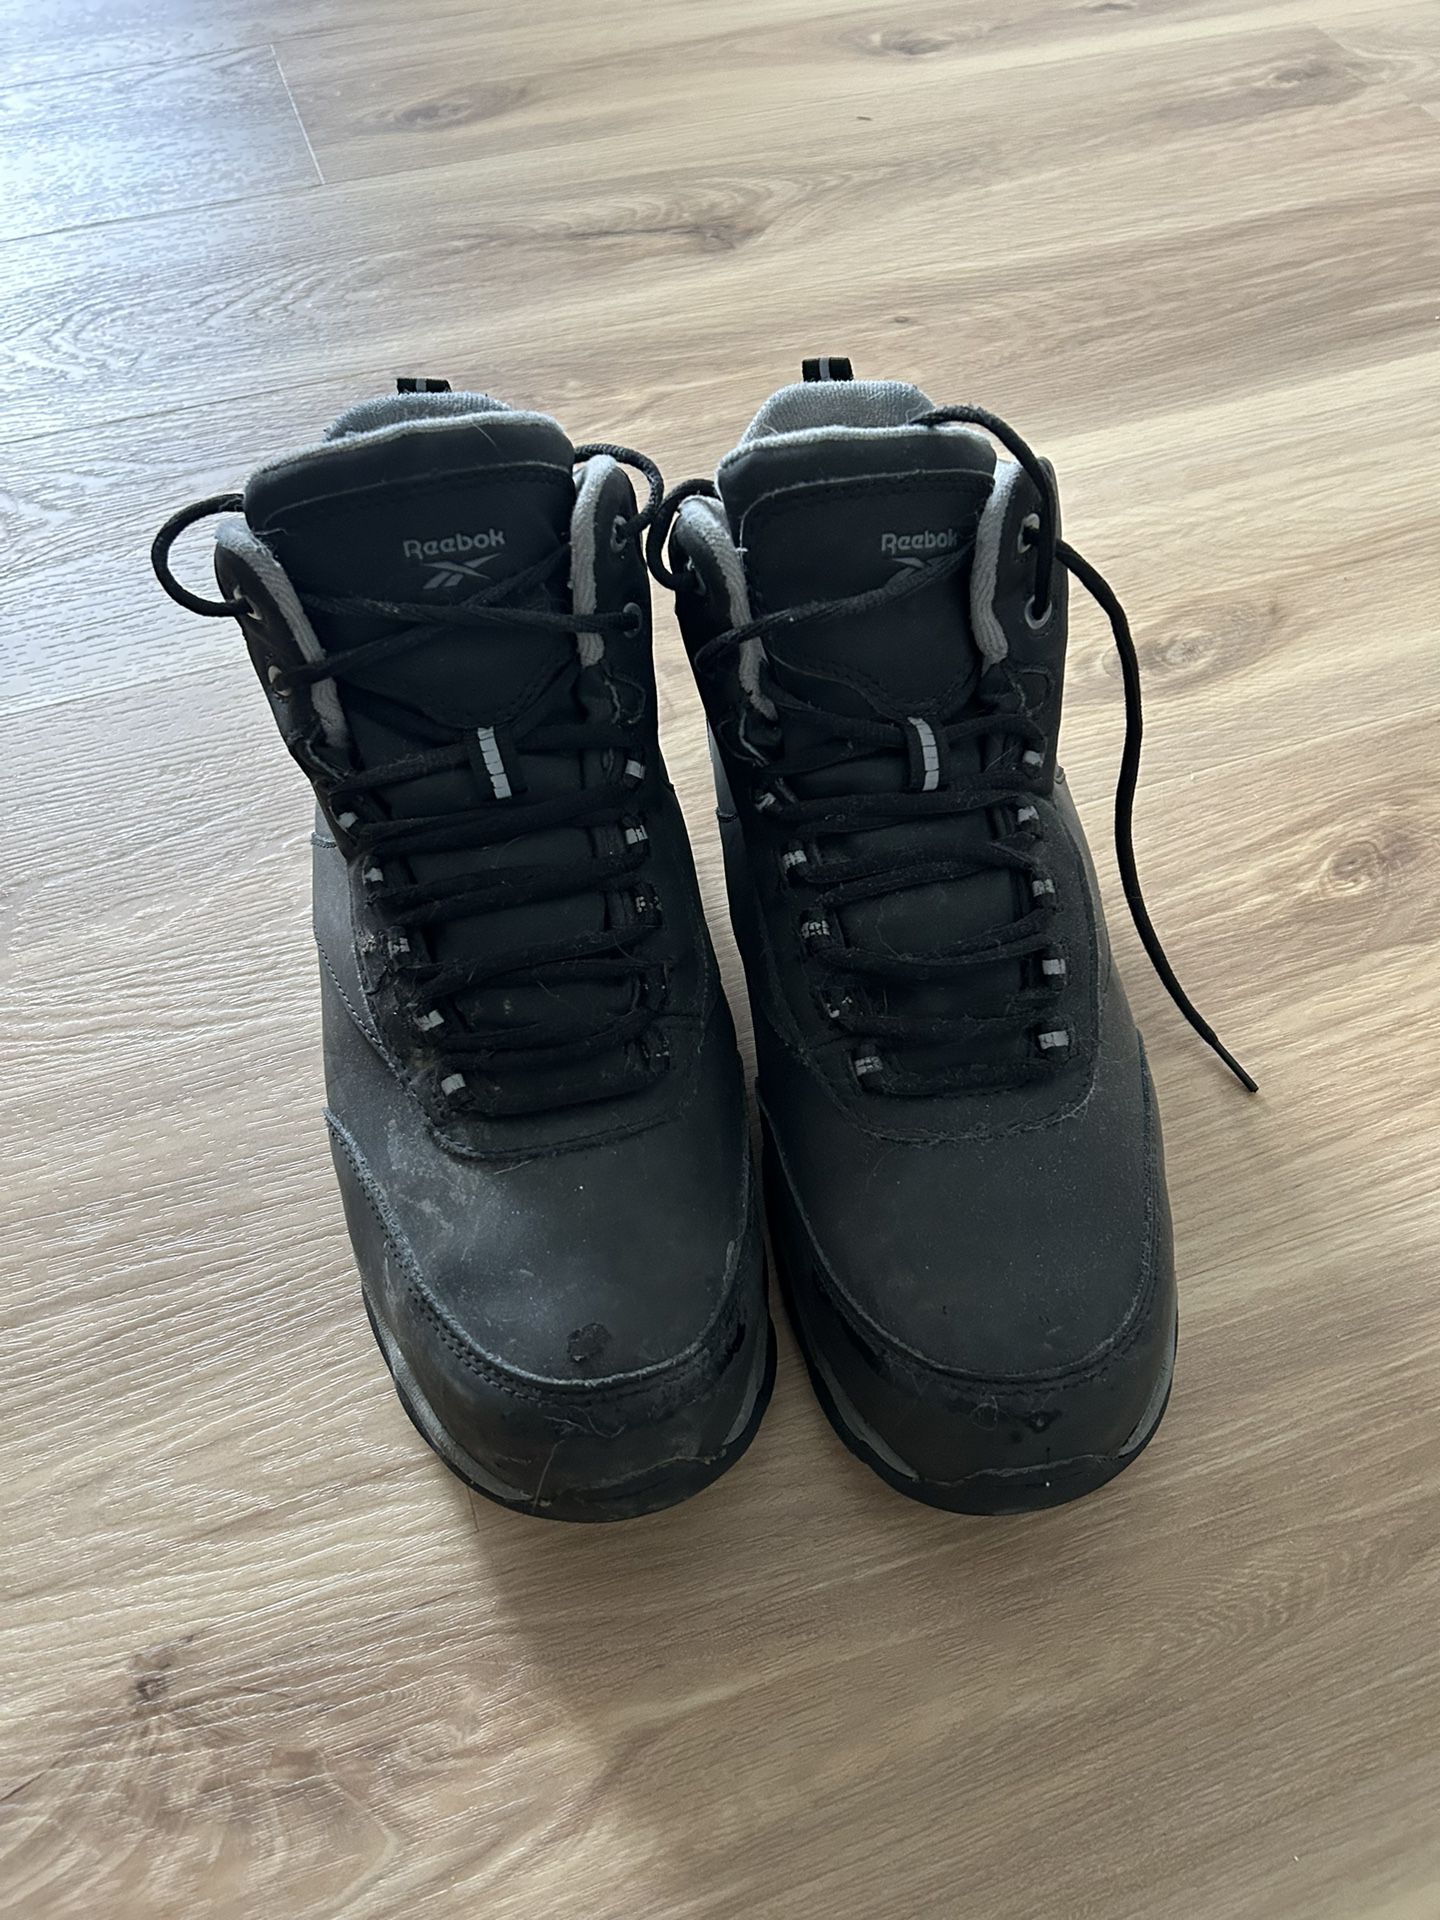 Reebok Men’s Work boots With Internal Met Guard